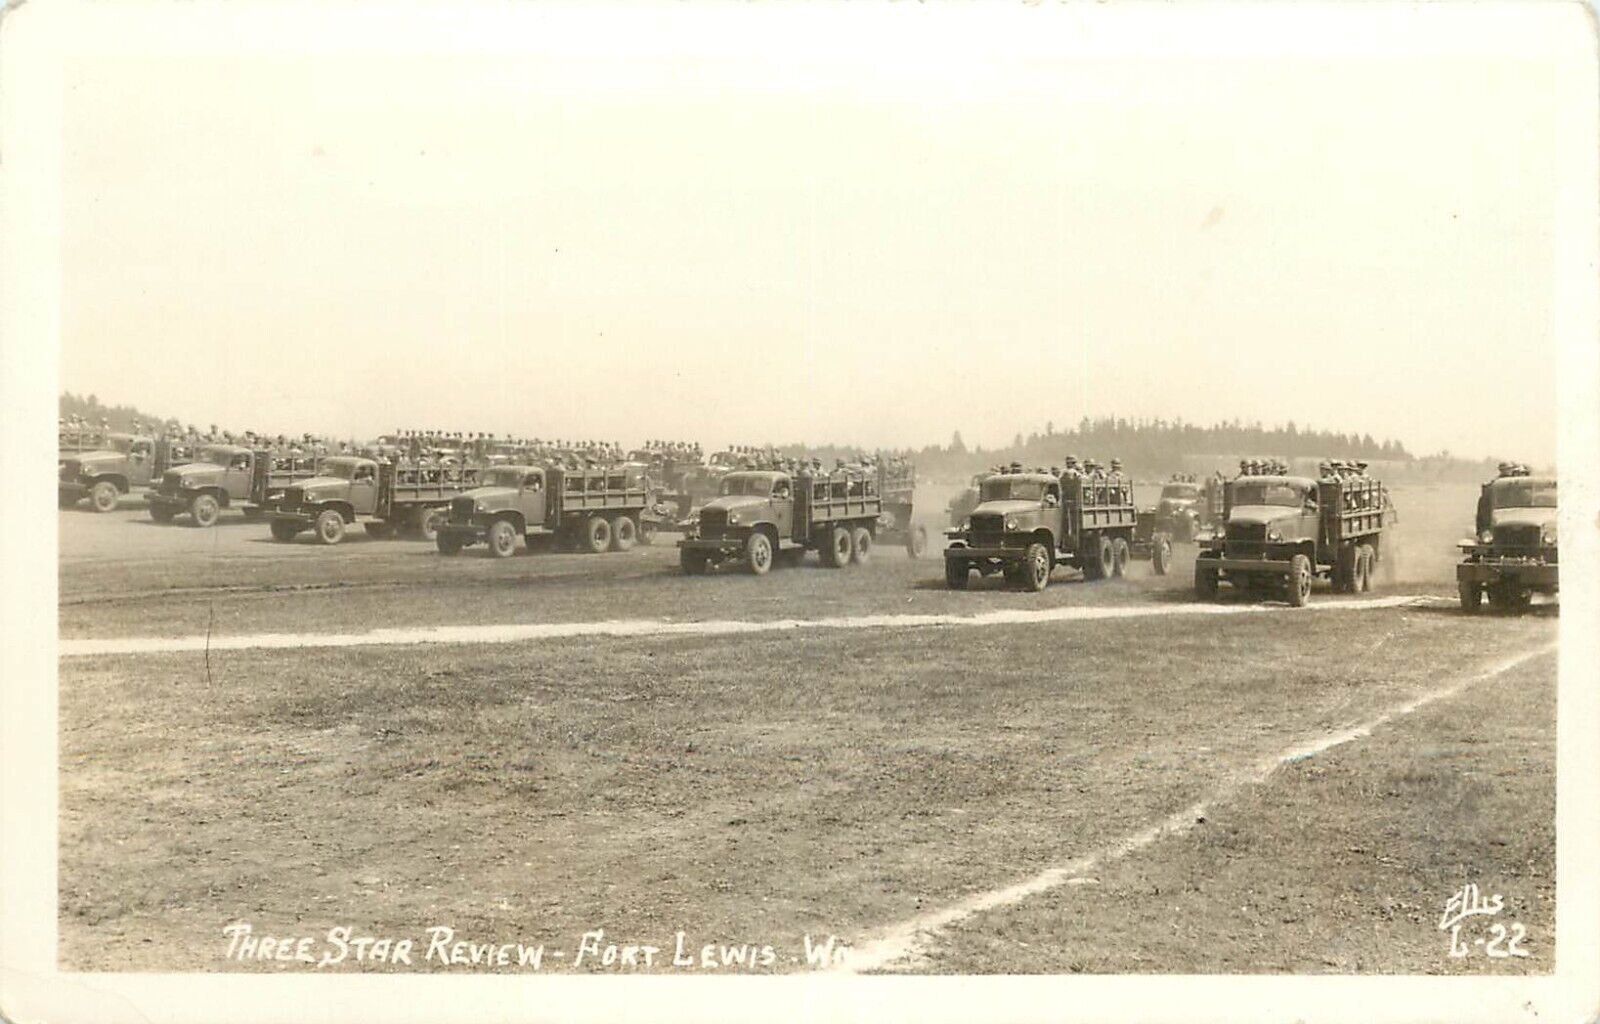 RPPC Postcard; Three Star Review, Fort Lewis WA Soldiers in Trucks, Ellis L-22